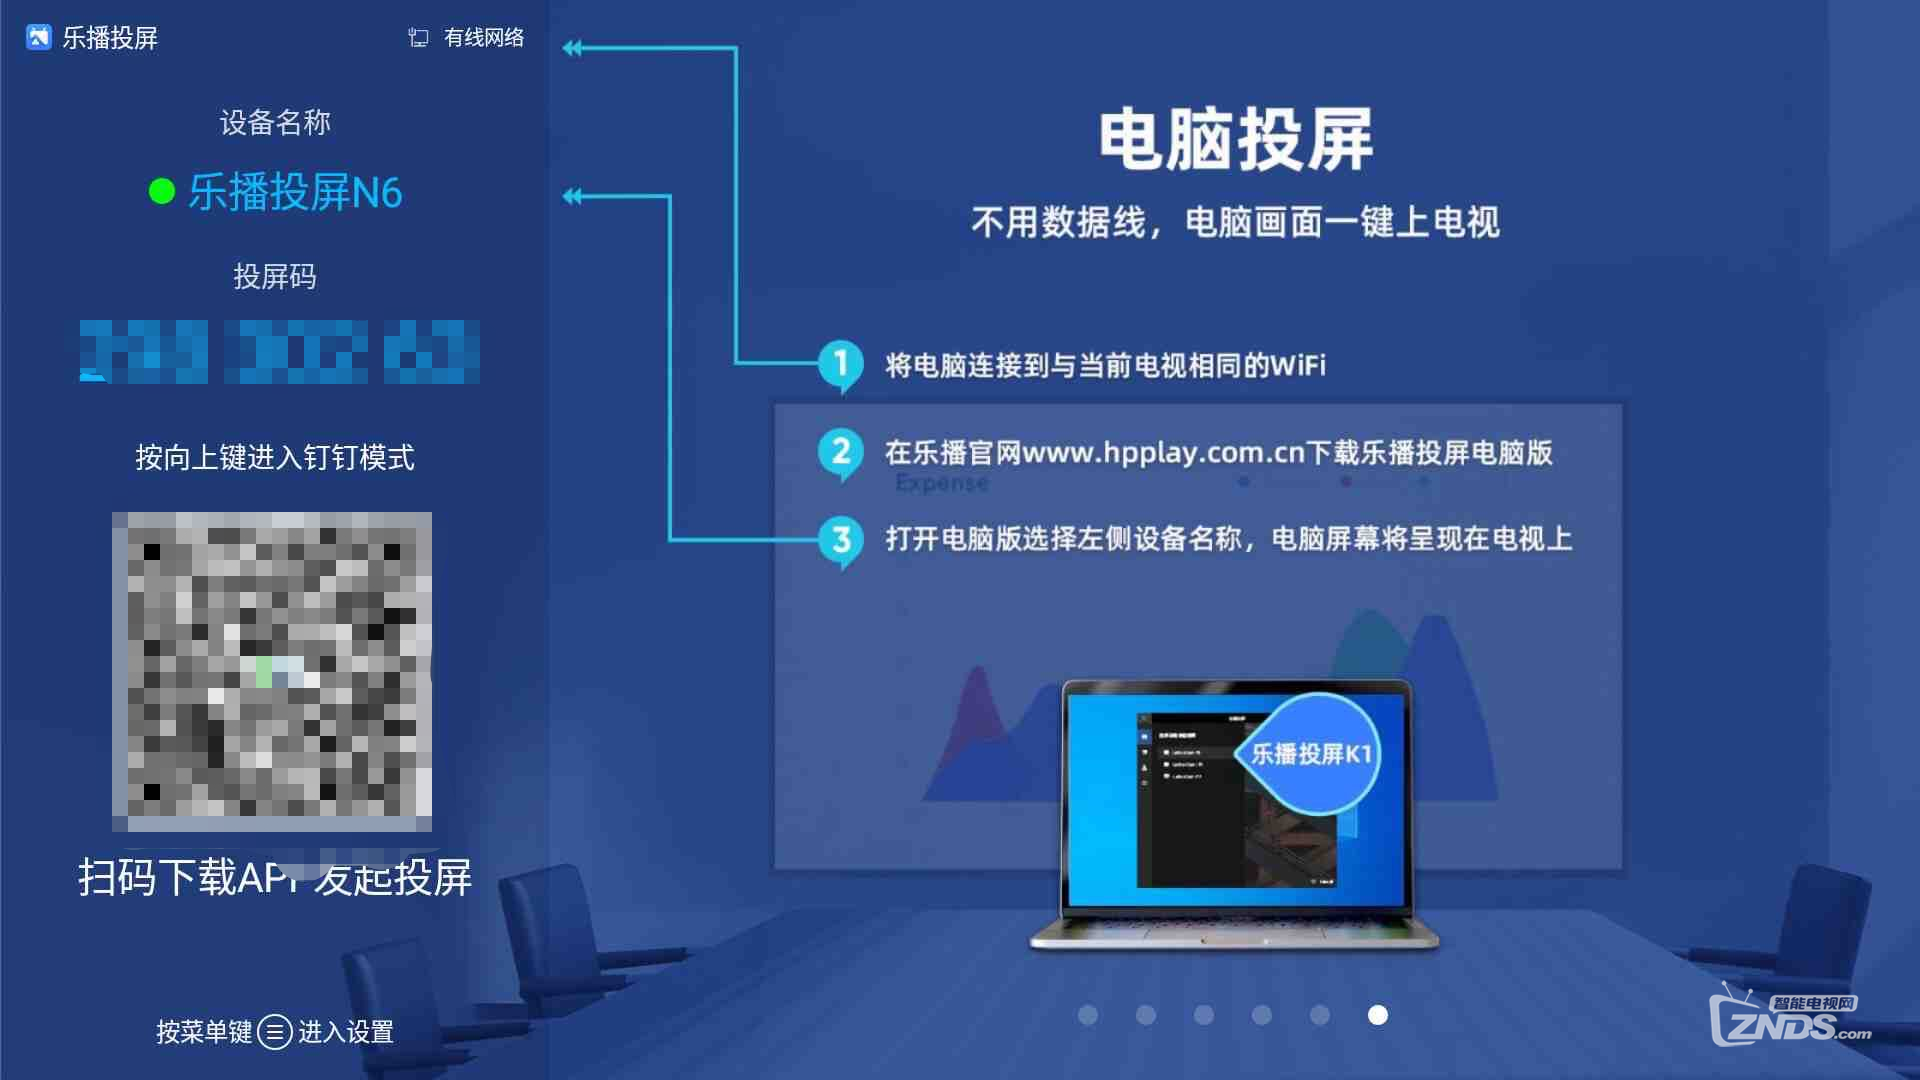 中国电信盒子怎么投屏到电视,万能投屏方法